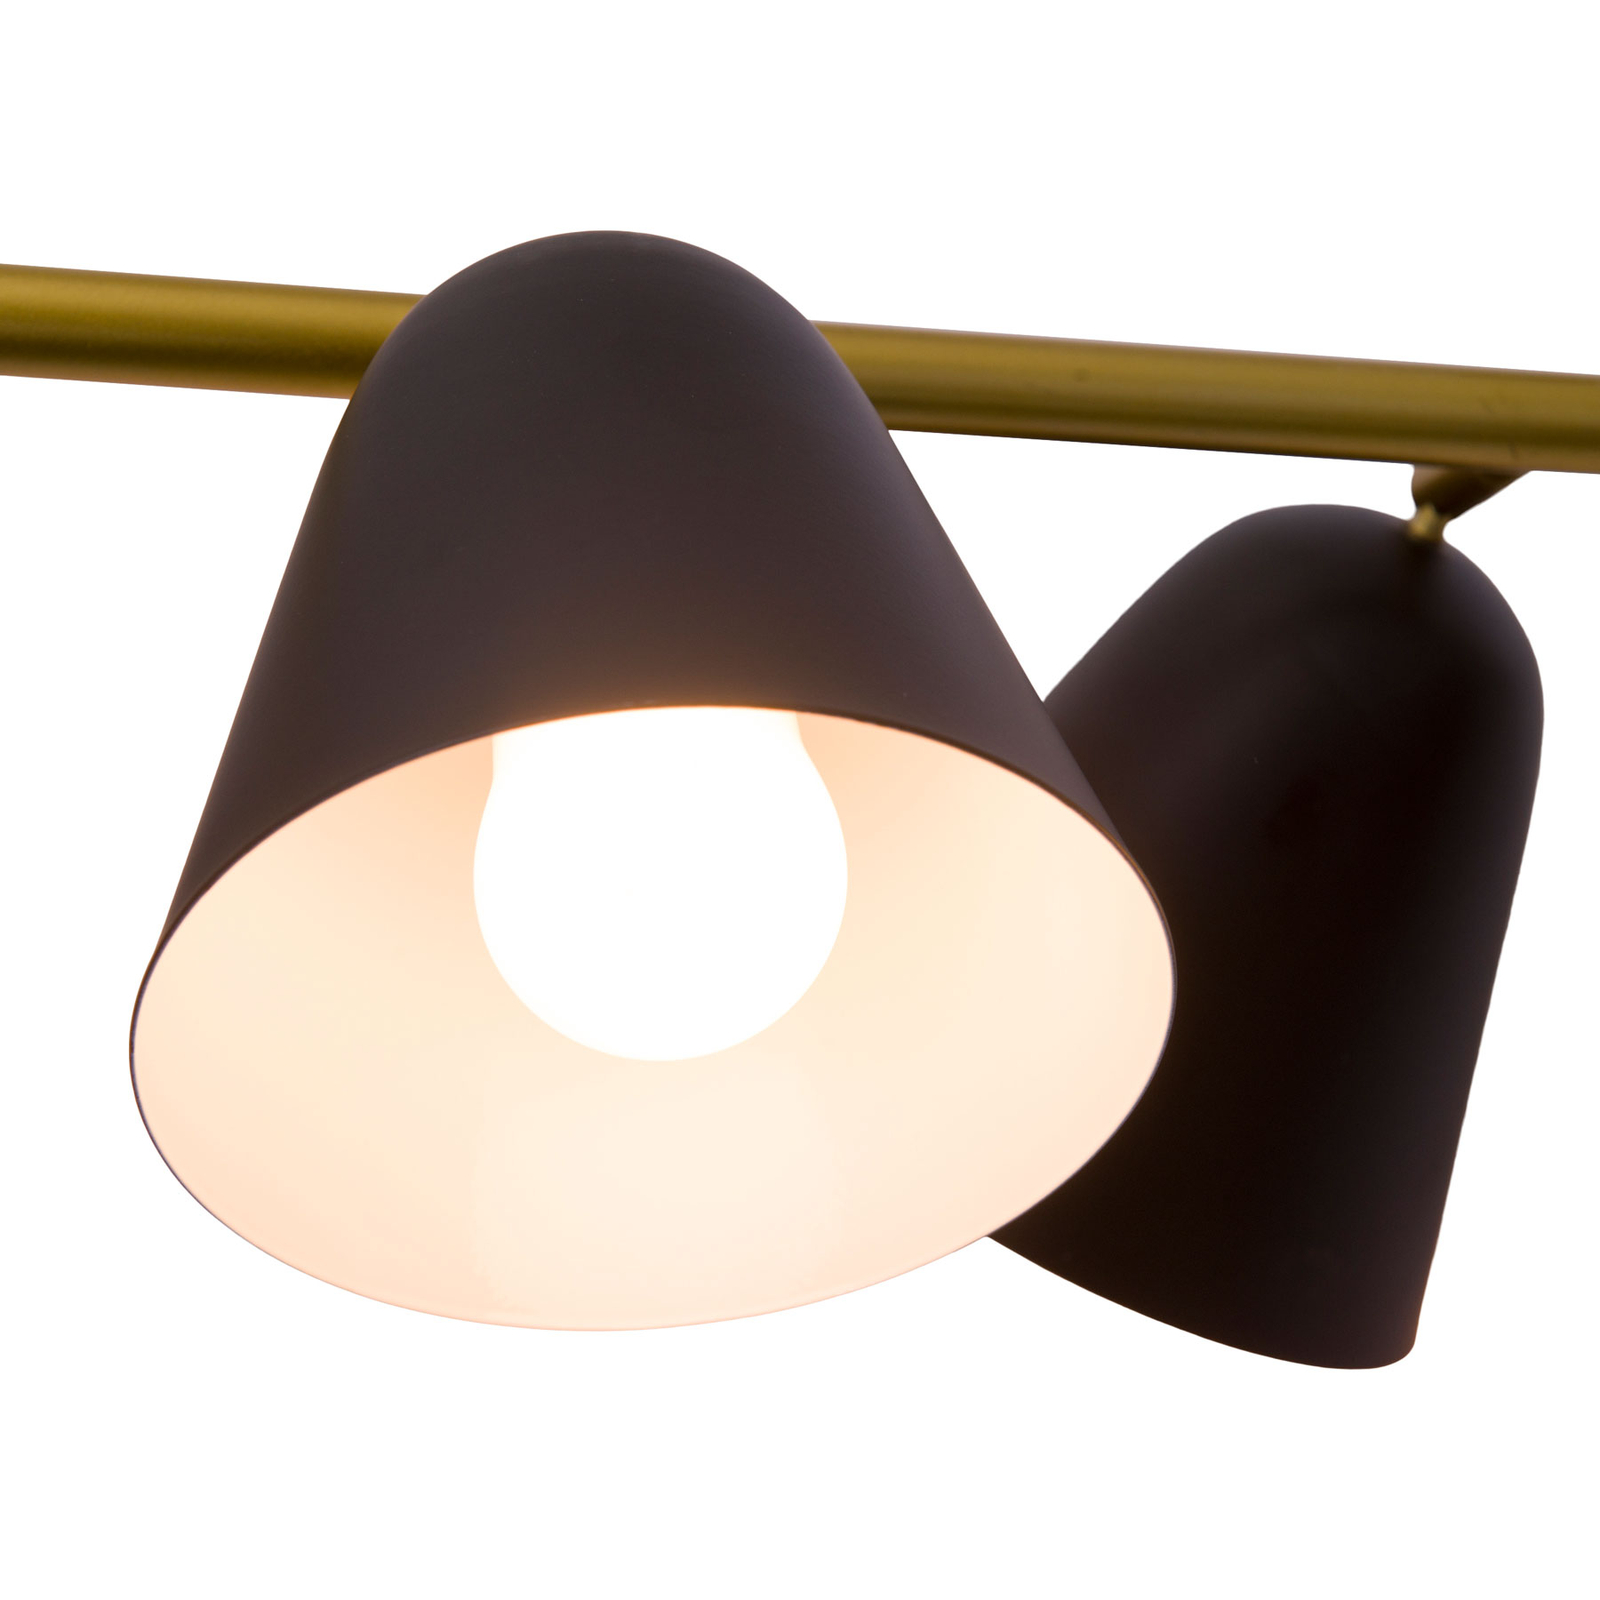 Hanglamp Triton, zwart en goud, 4-lamps